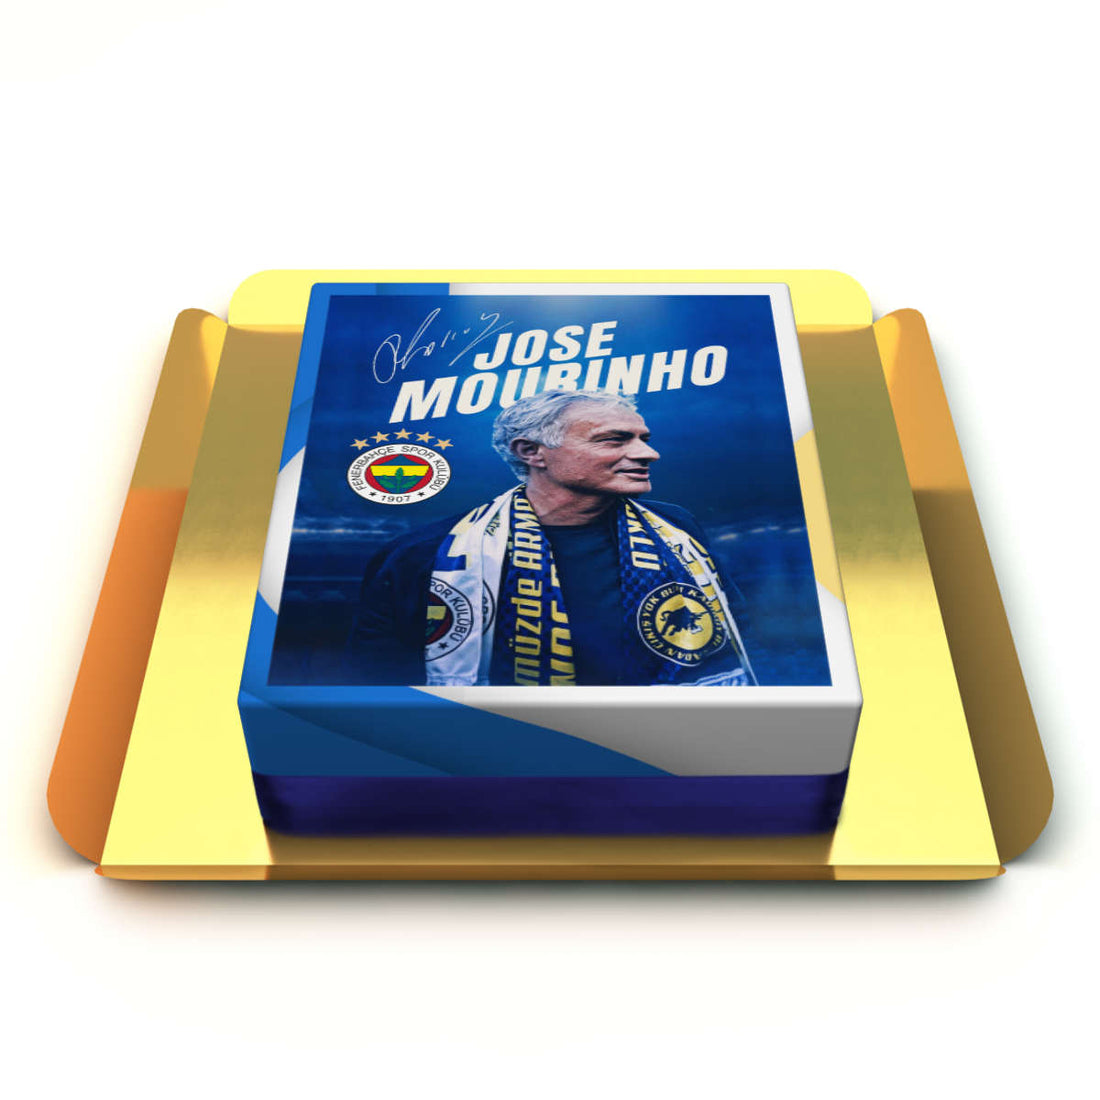 Jose Mourinho Resimli Pasta